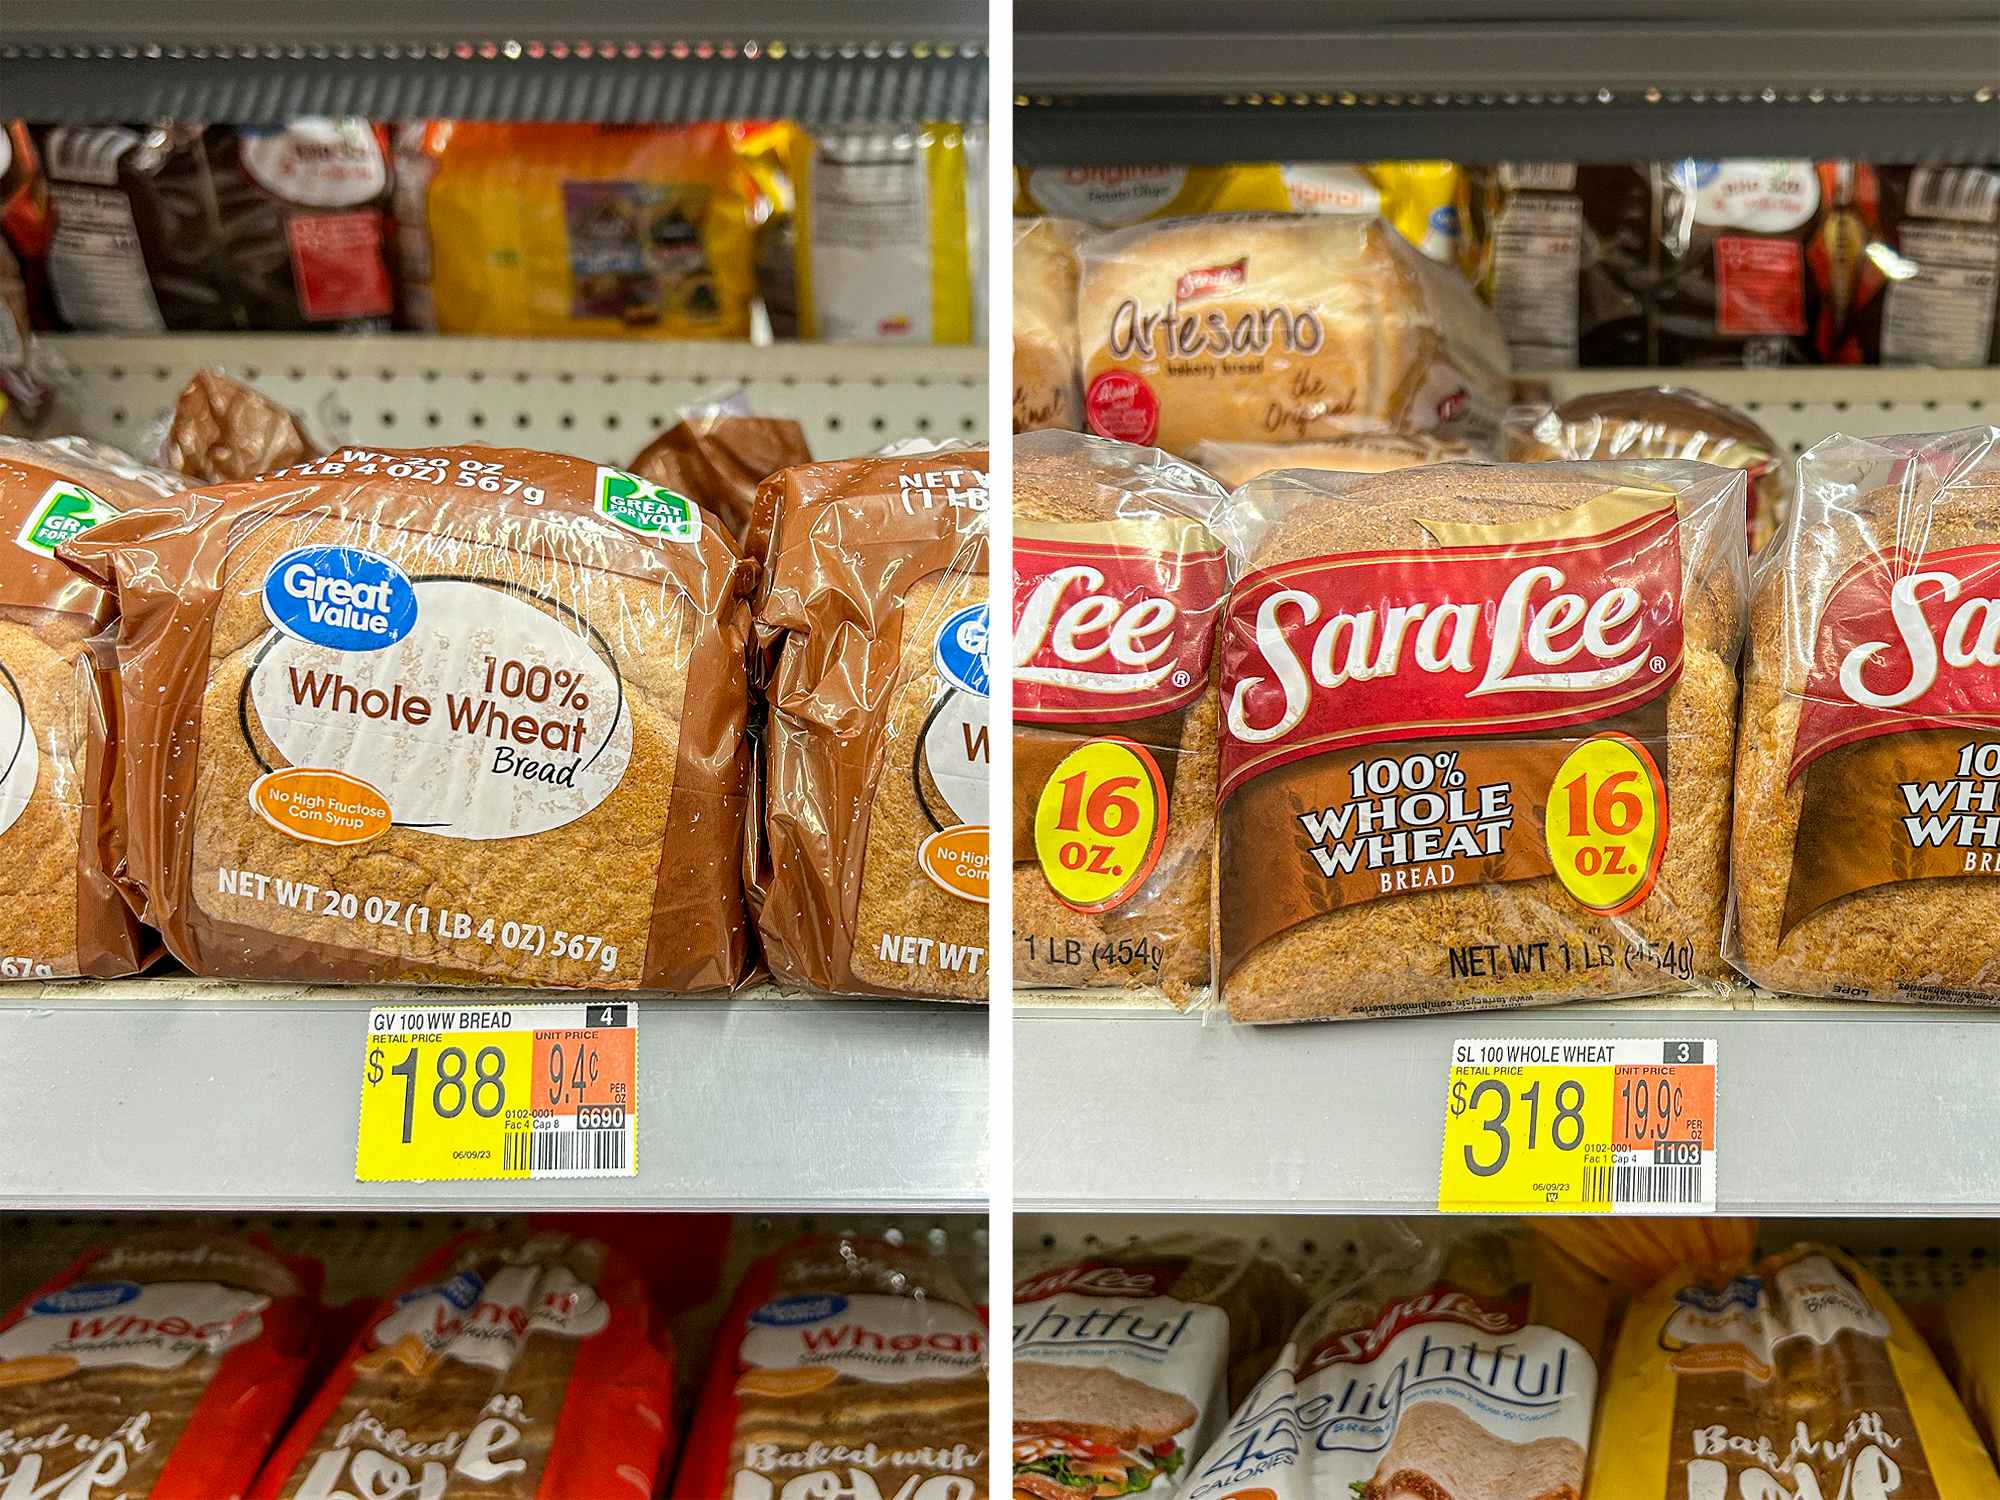 walmart's great value vs sara lee brand whole wheat bread price comparison